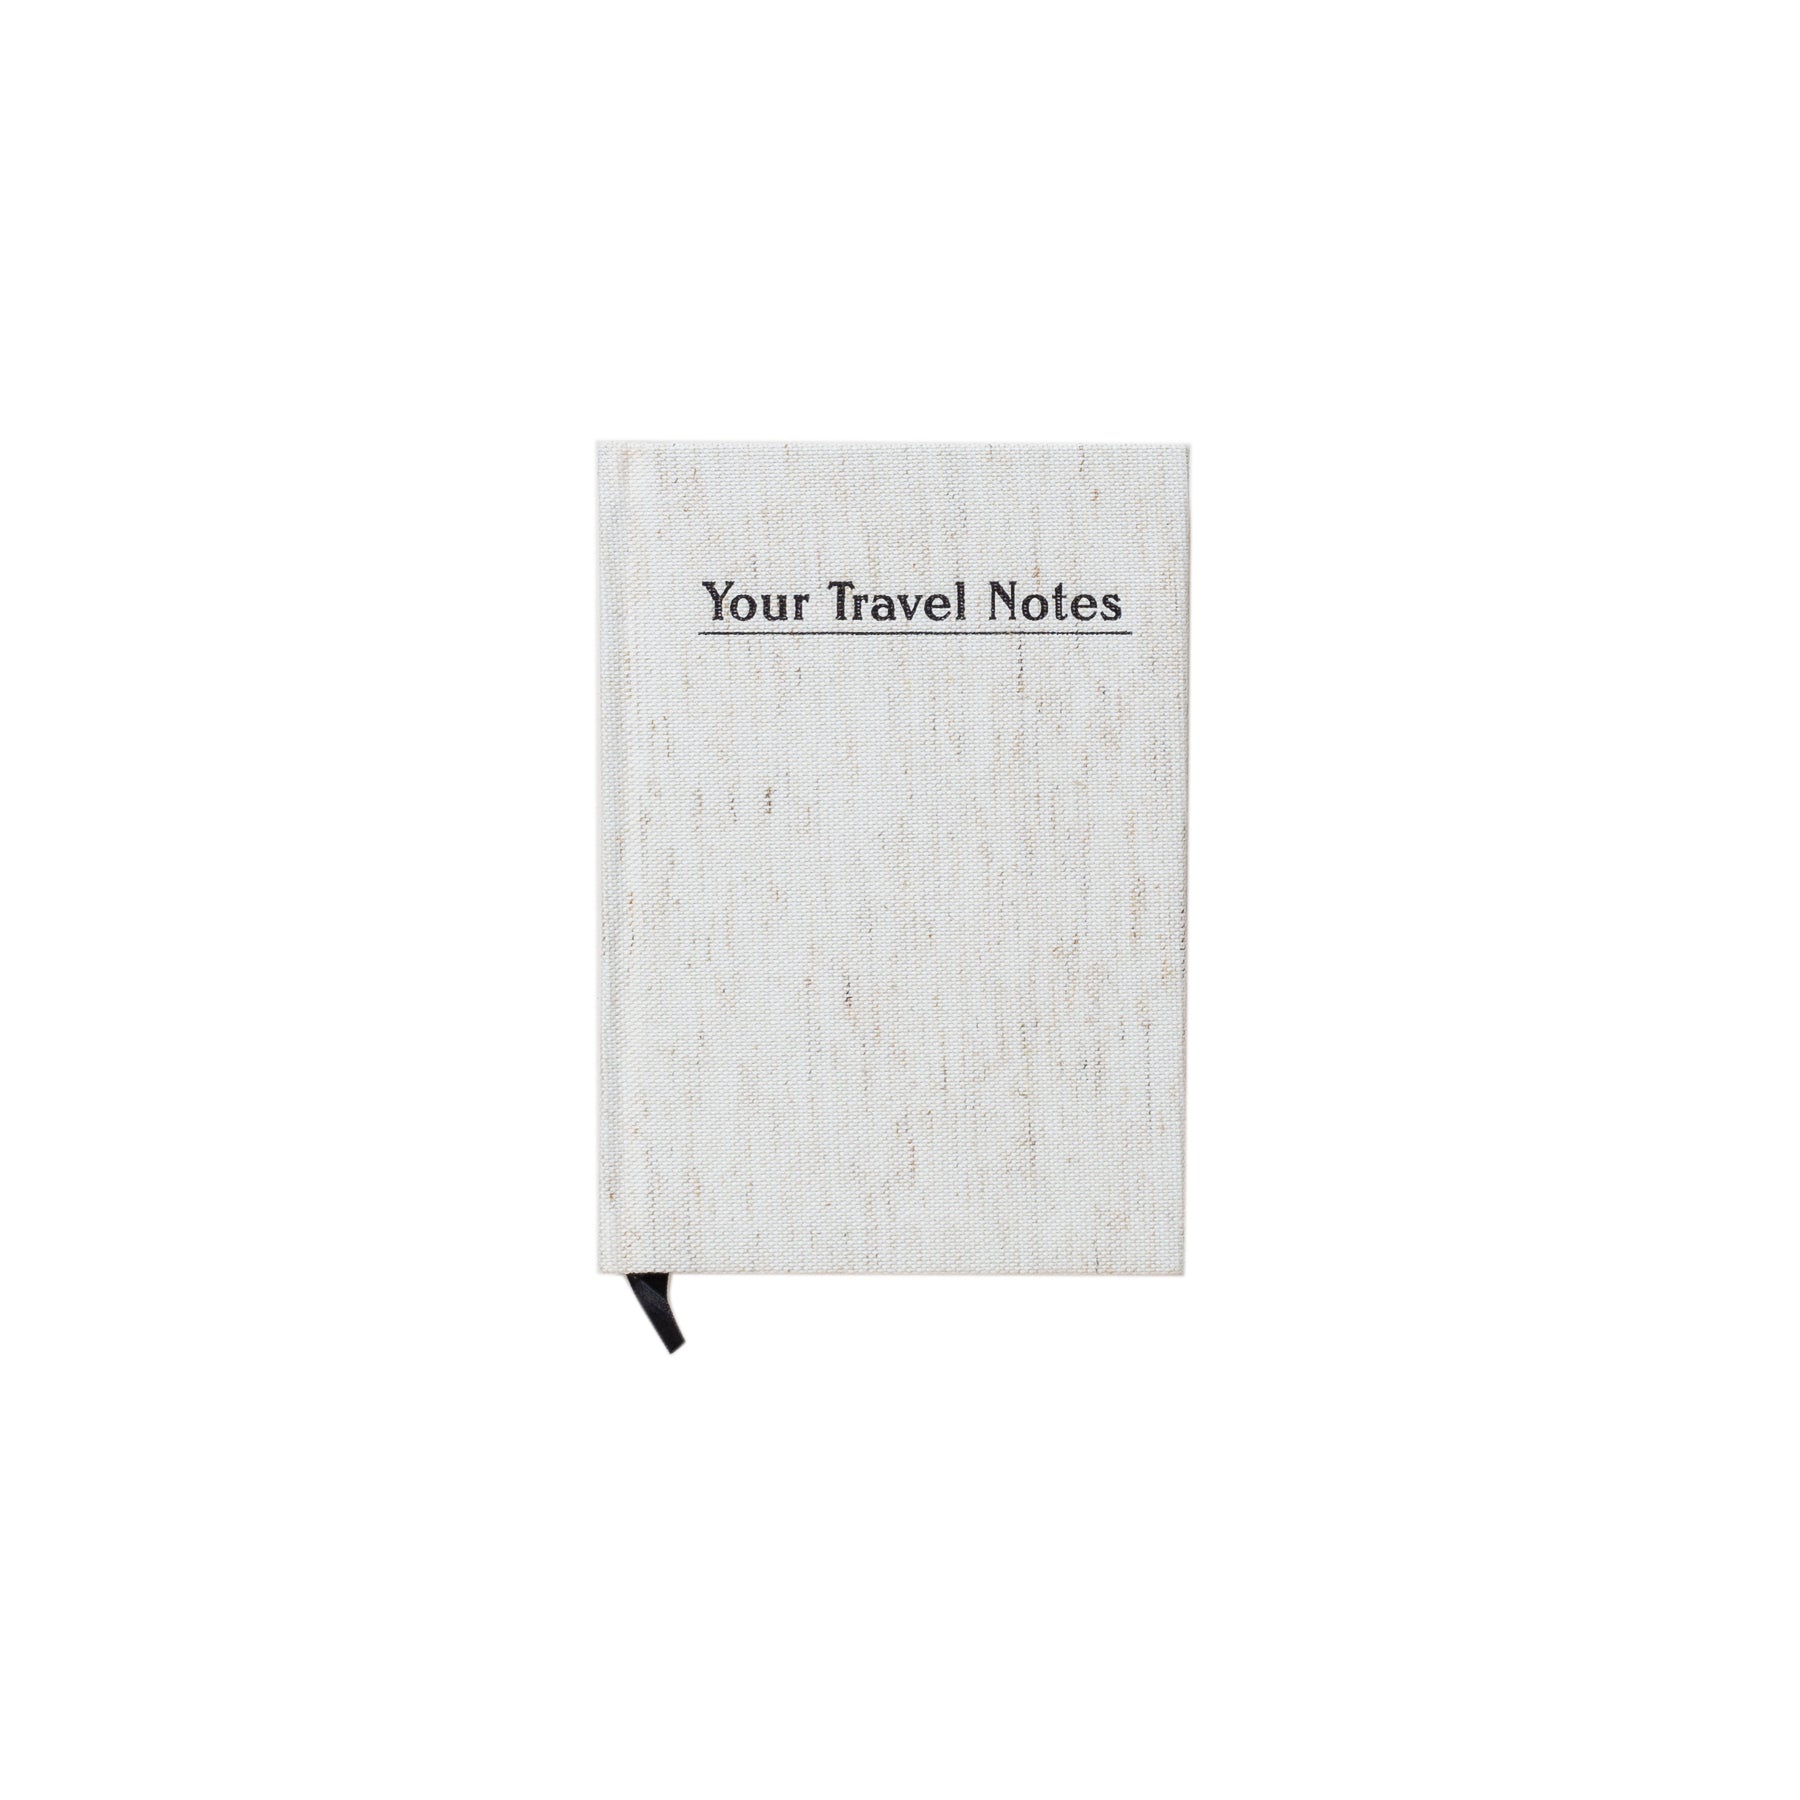 Votre journal de notes de voyage